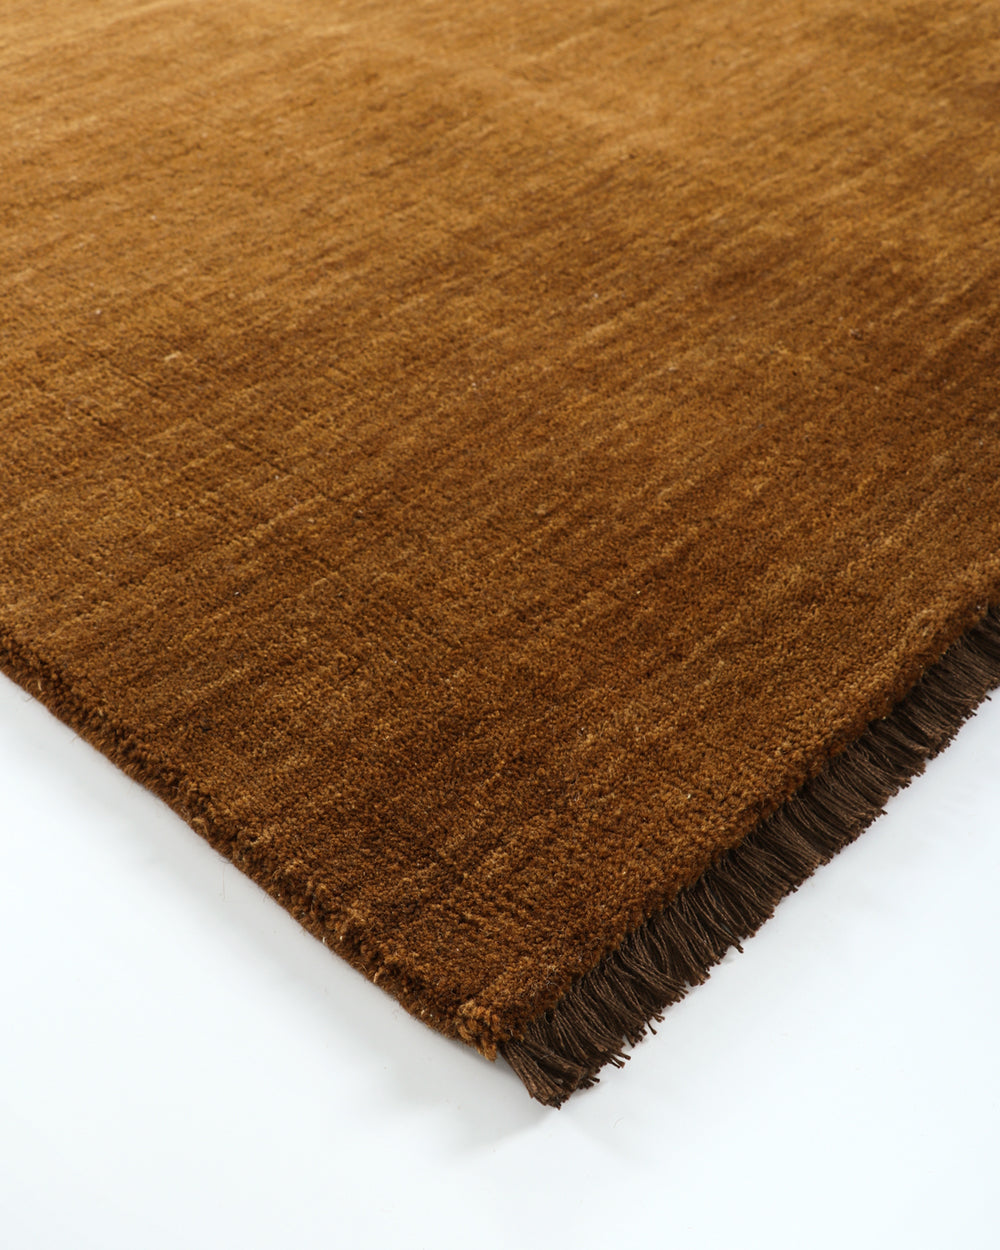 Sandringham wool rug in pecan